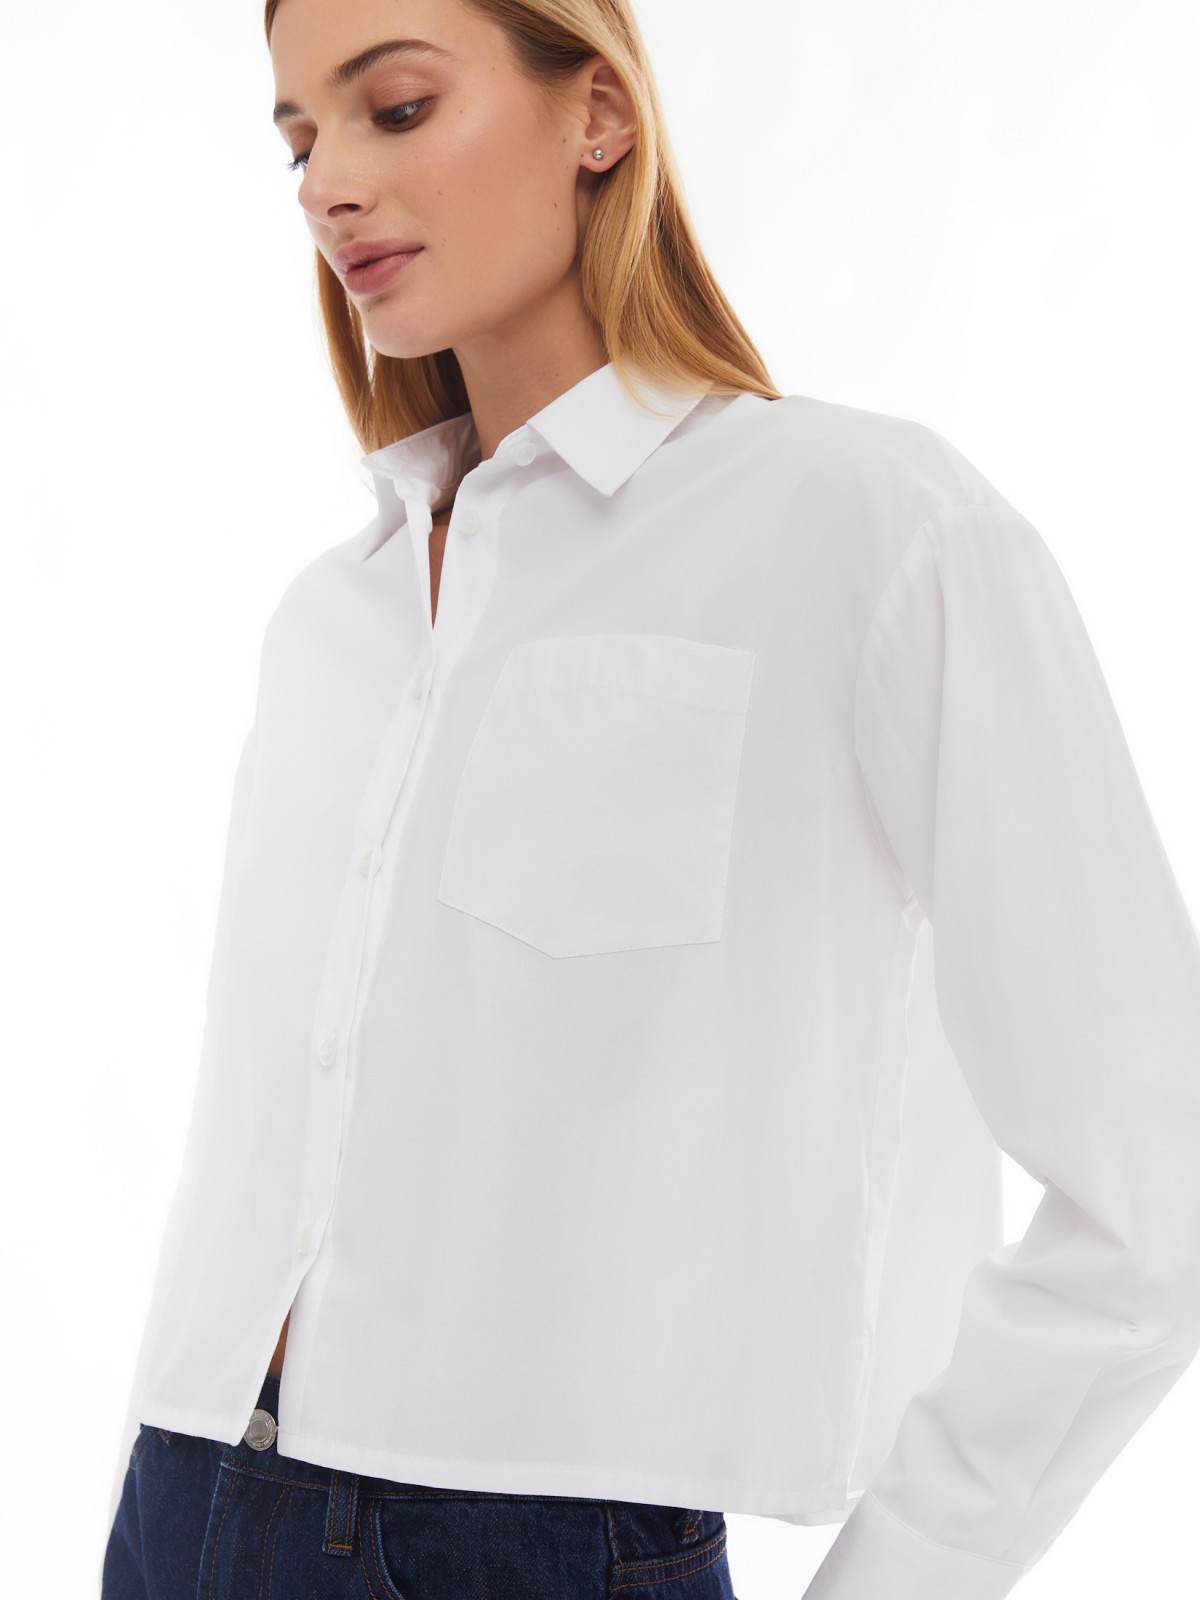 Укороченная рубашка оверсайз силуэта zolla 02412118Y043, цвет белый, размер XXS - фото 1